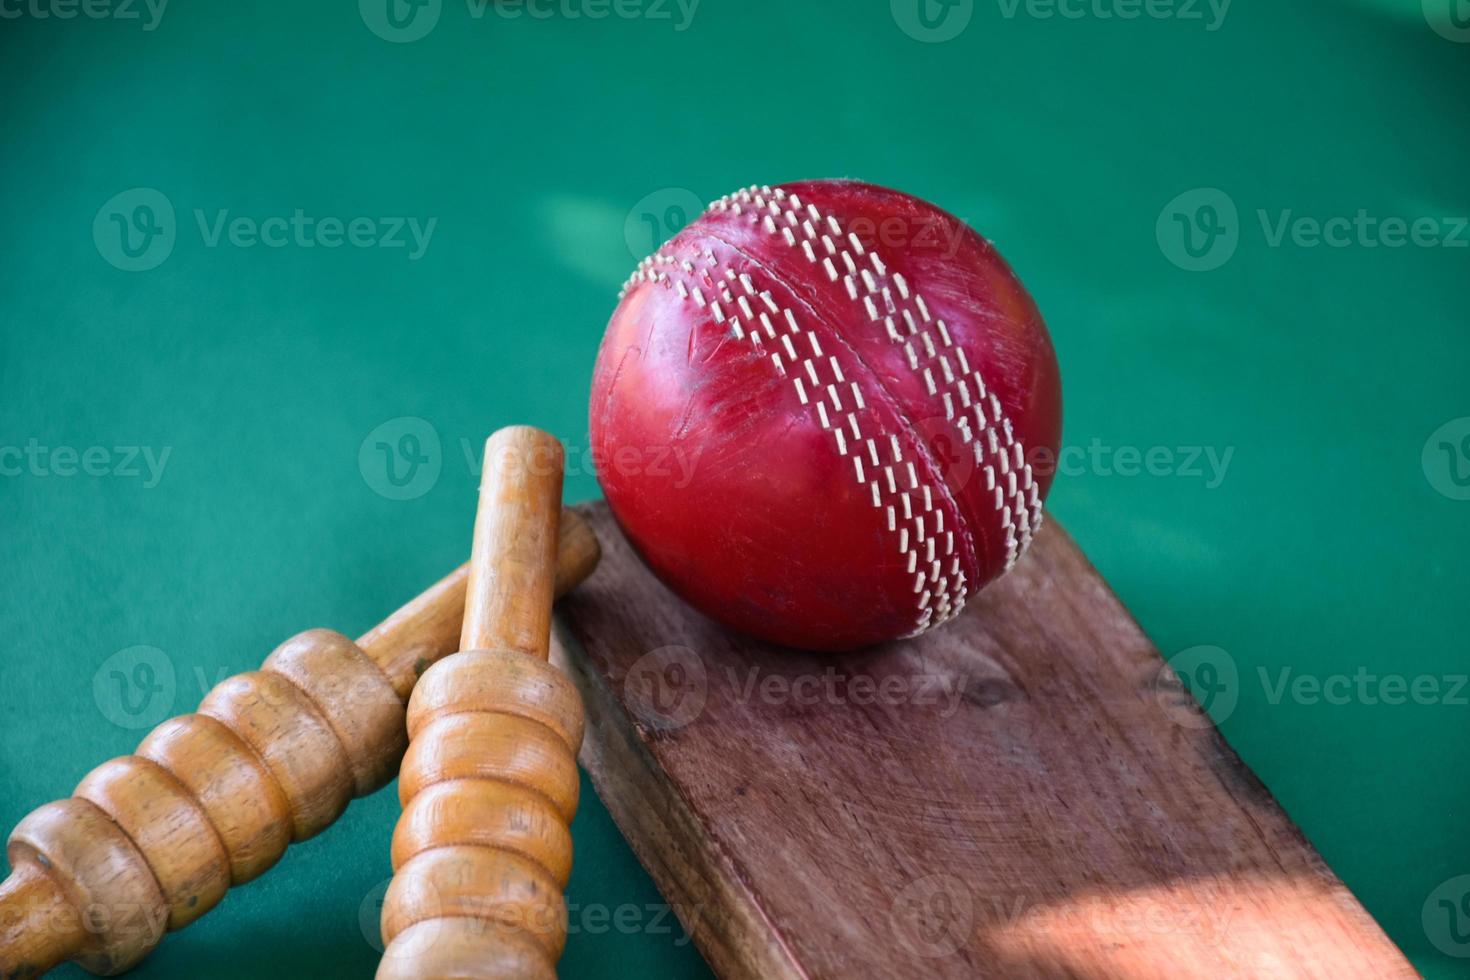 primer plano de equipos deportivos de cricket antiguos en suelo verde, pelota de cuero antigua, wickets de madera y bate de madera, enfoque suave y selectivo, concepto tradicional de los amantes del deporte de cricket en todo el mundo. foto